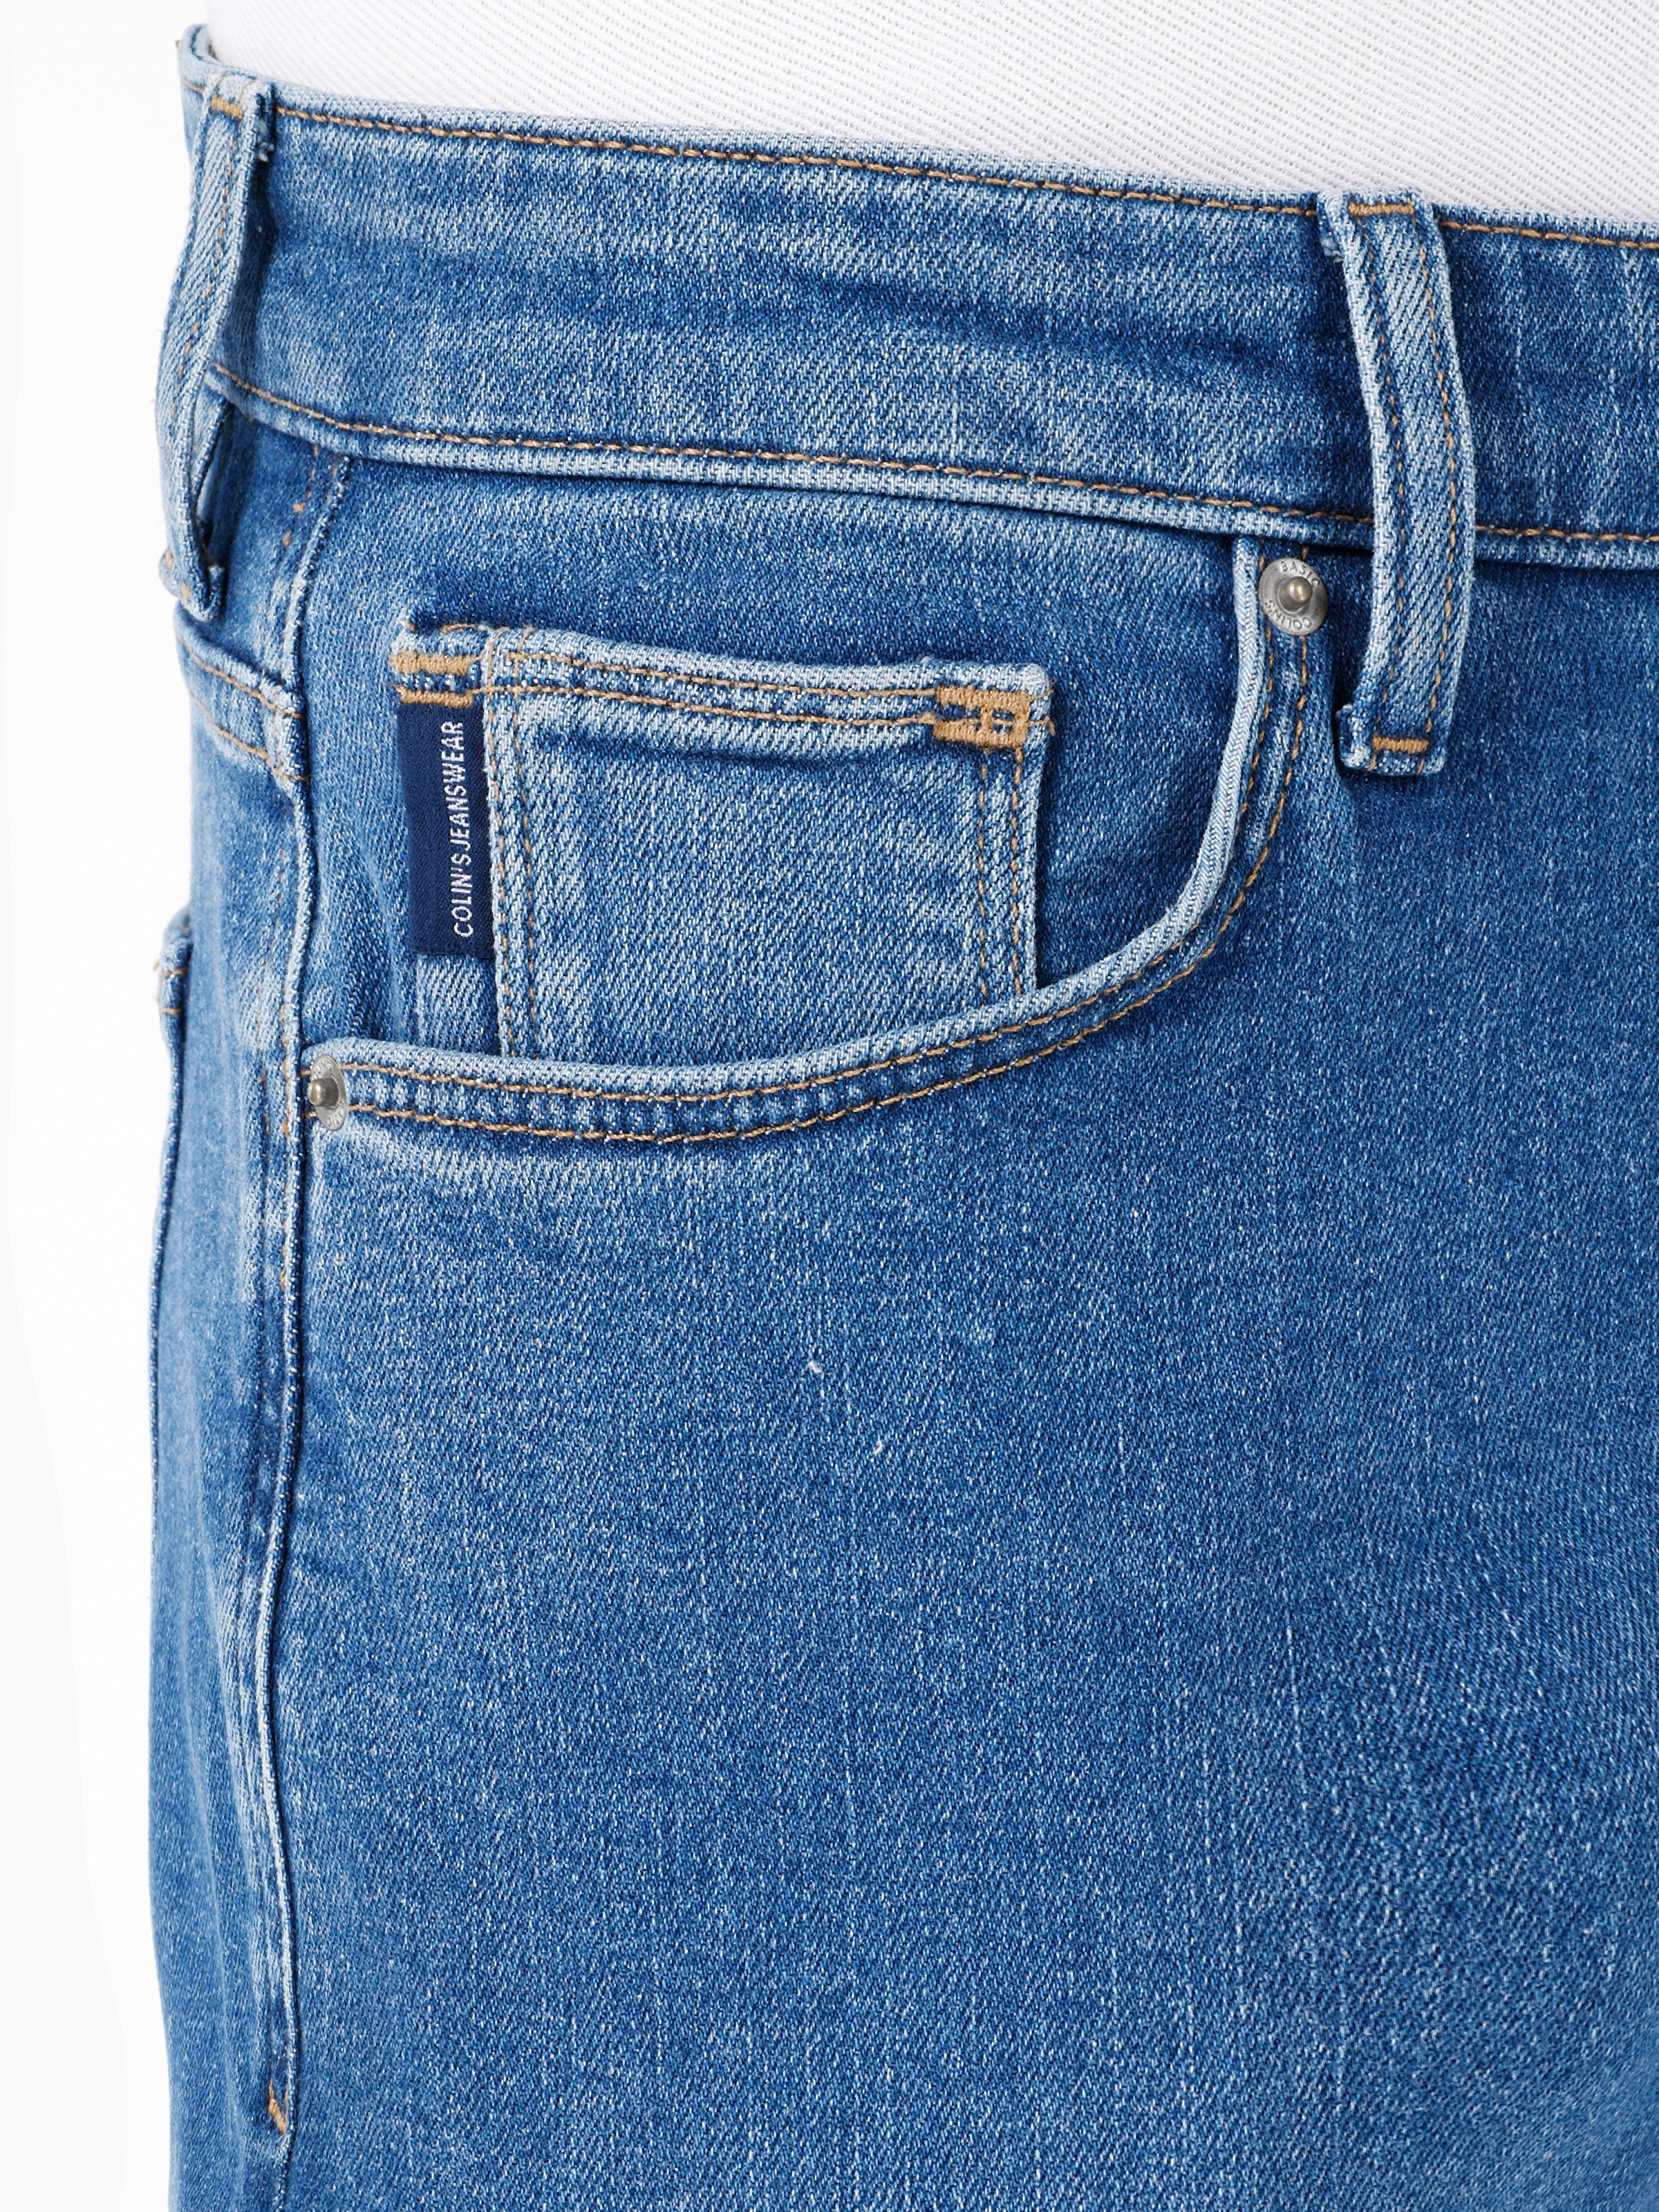 Afișați detalii pentru Pantaloni De Barbati Denim Slim Fit 041 DANNY CL1068872